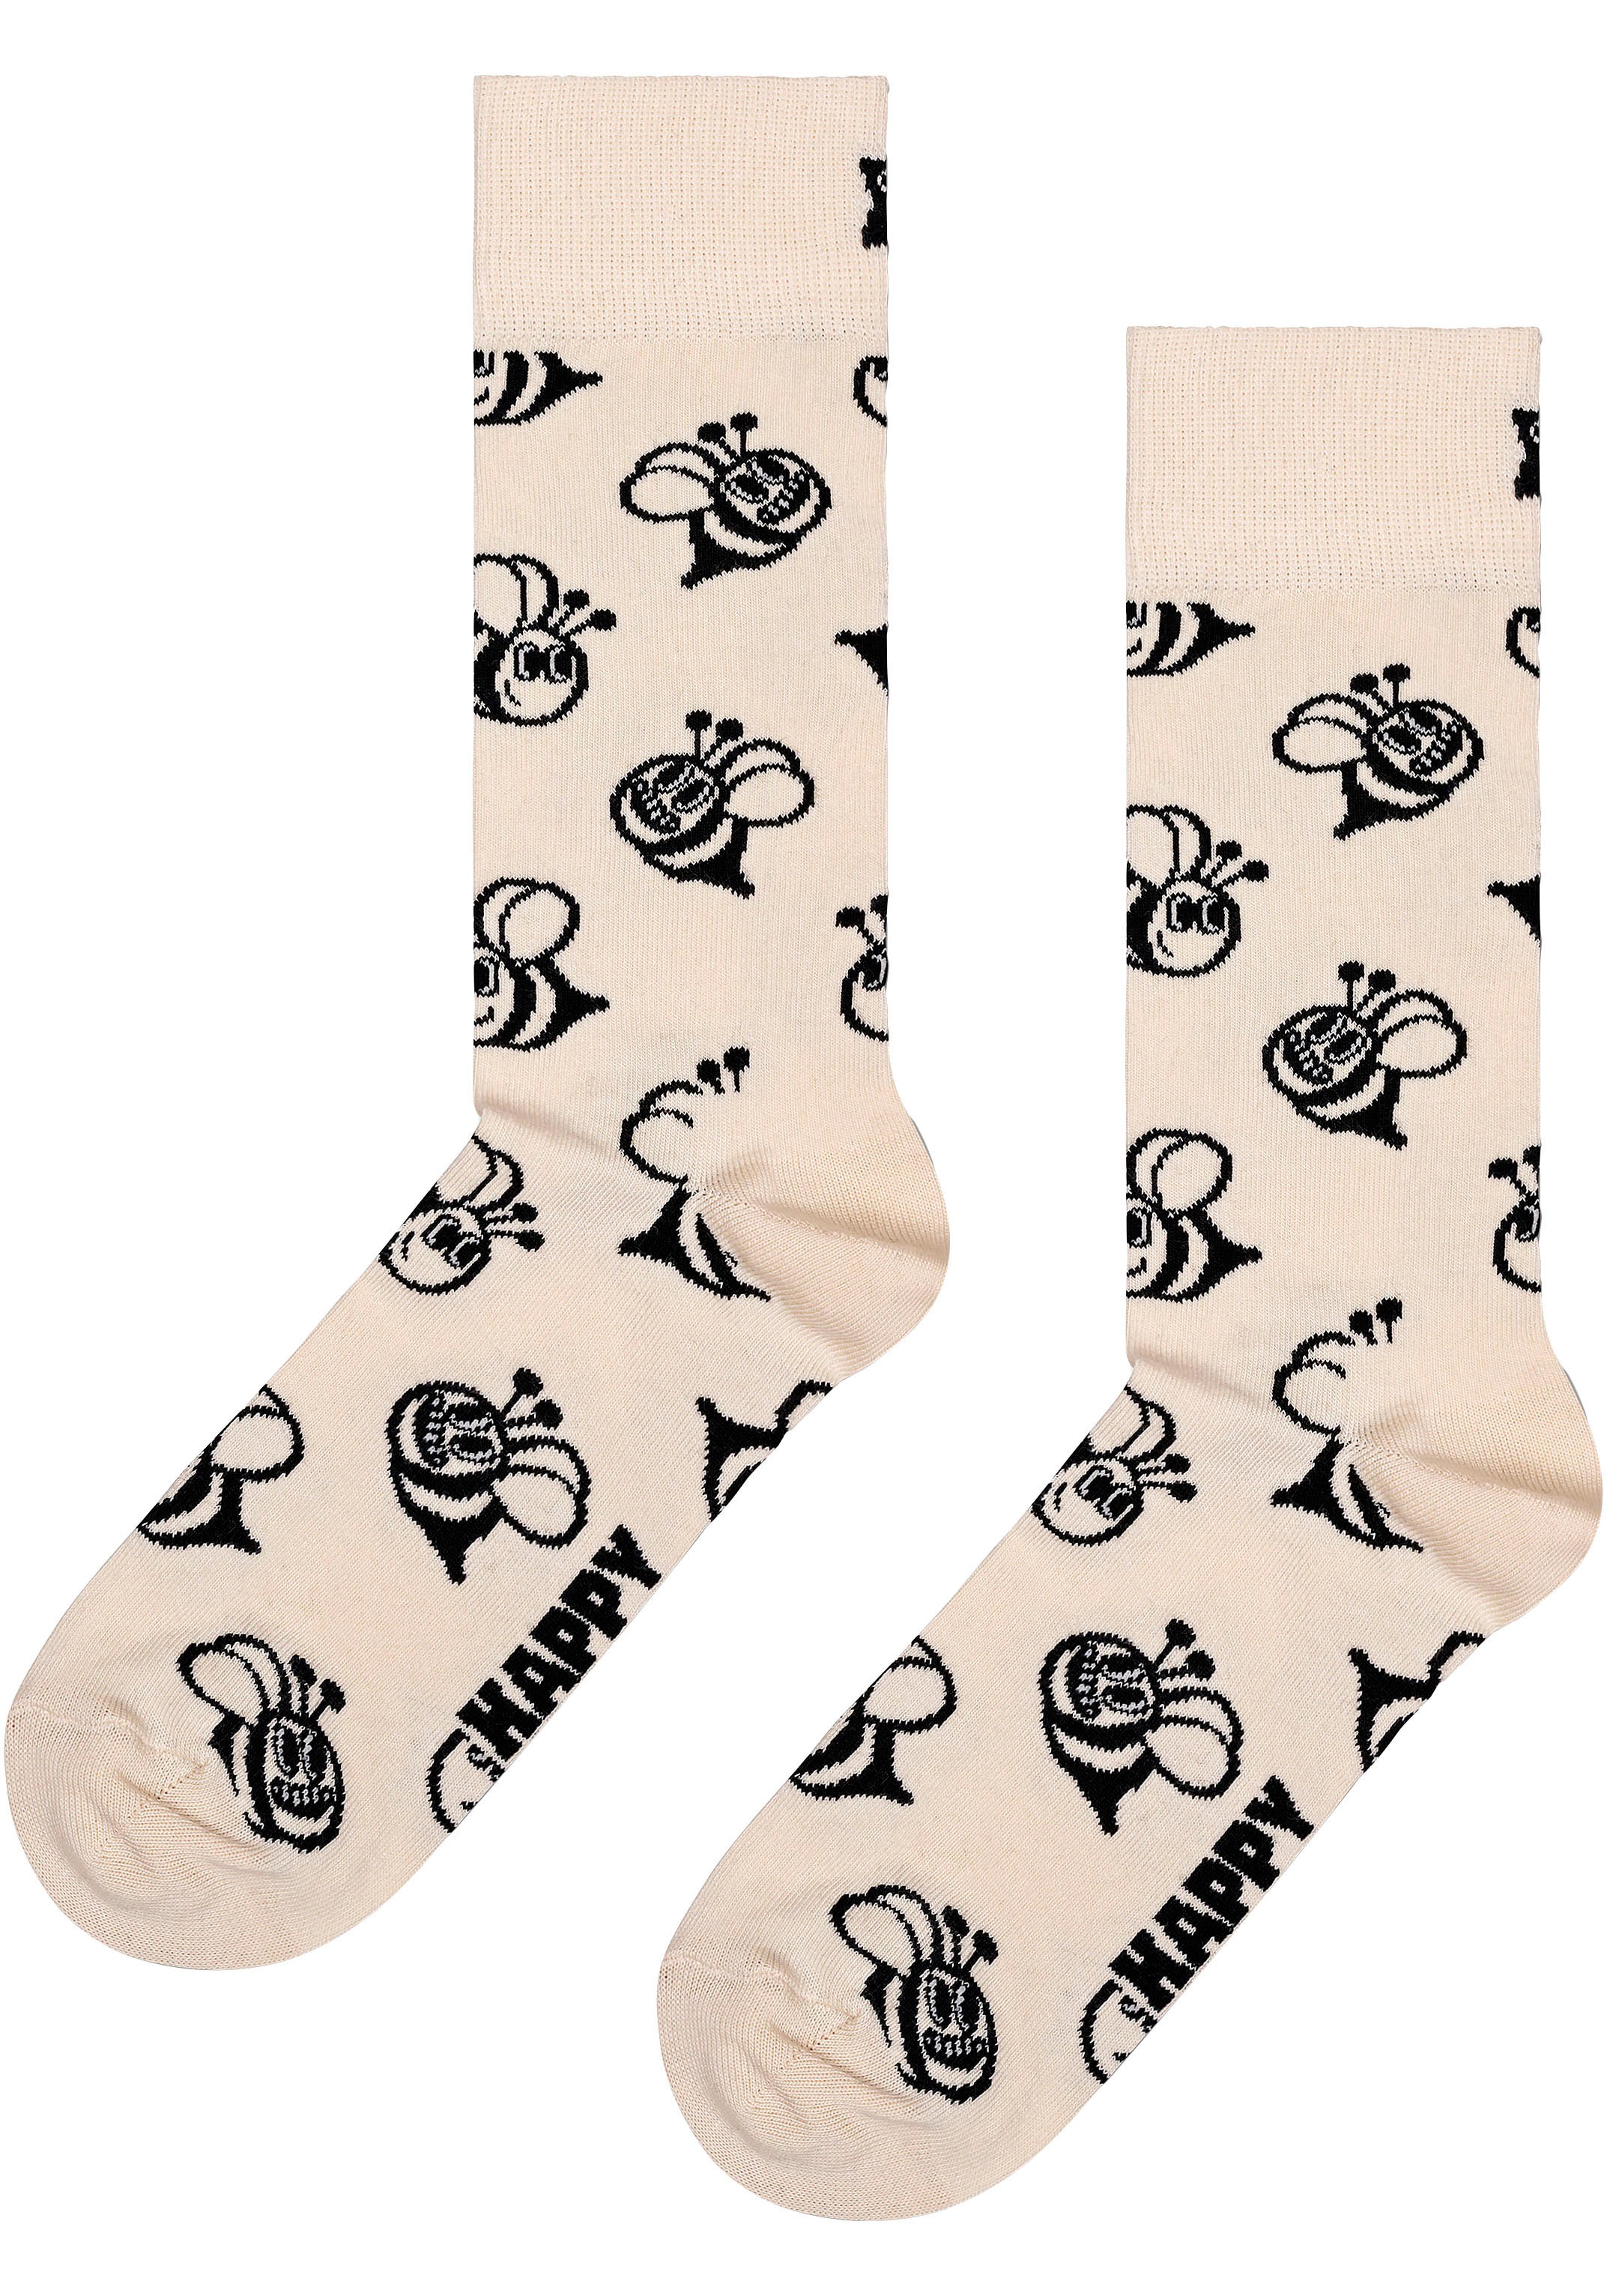 ➤ Strümpfe & Socken auf Rechnung shoppen | Lange Socken